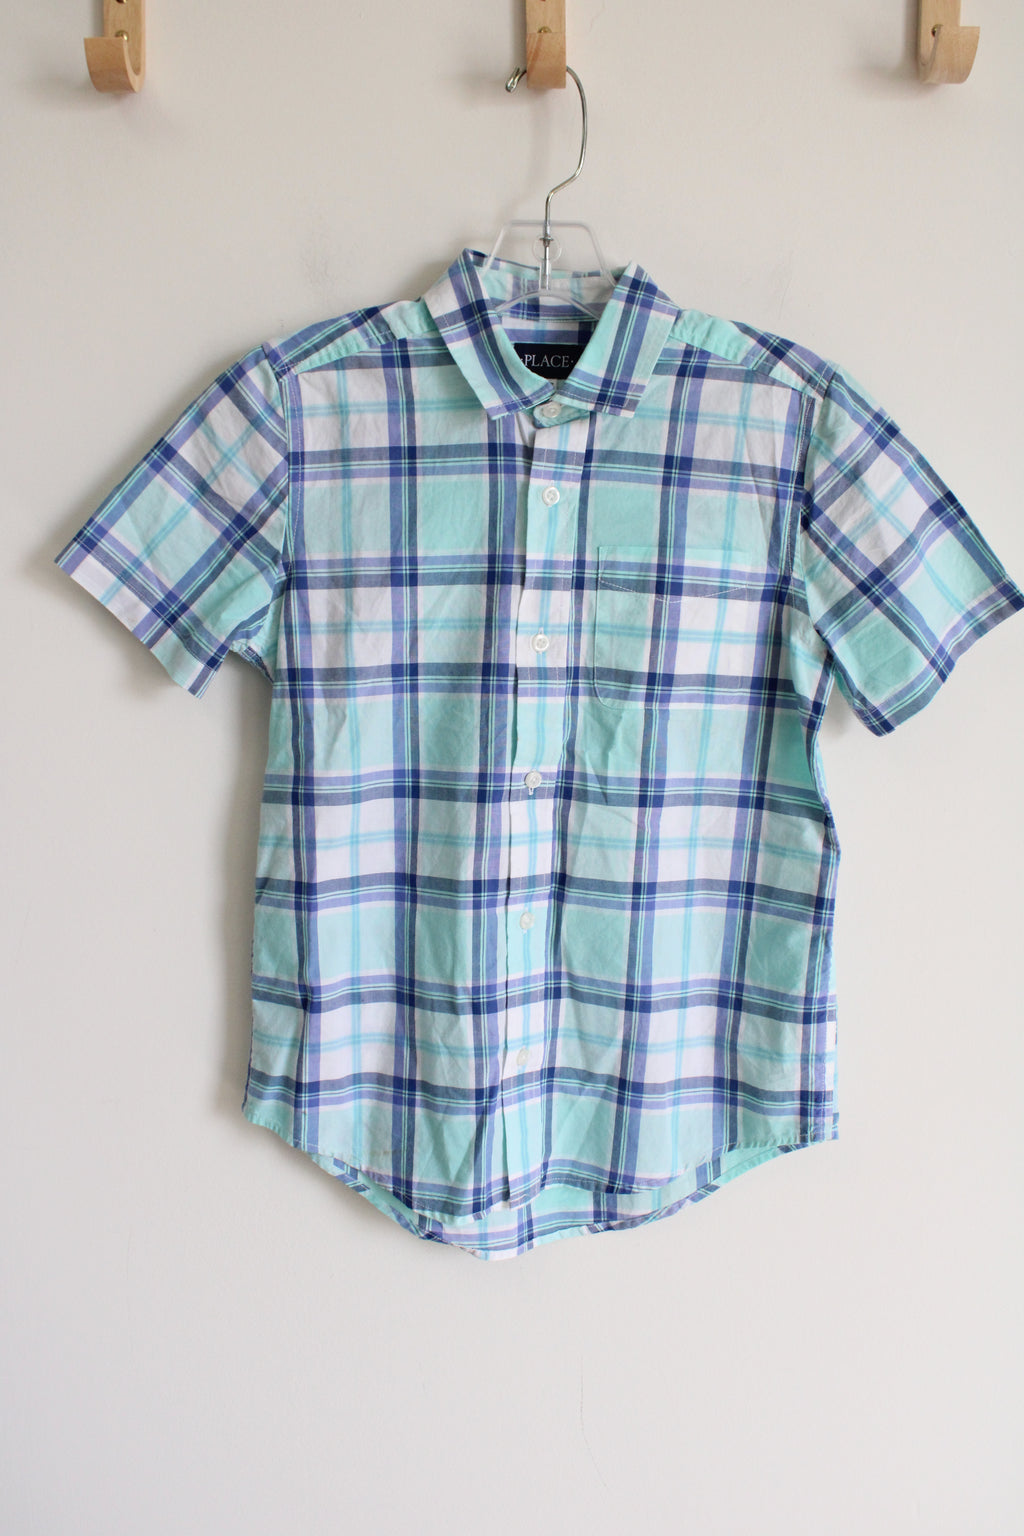 Children's Place Blue Plaid Button Down Shirt | Youth L (10/12)